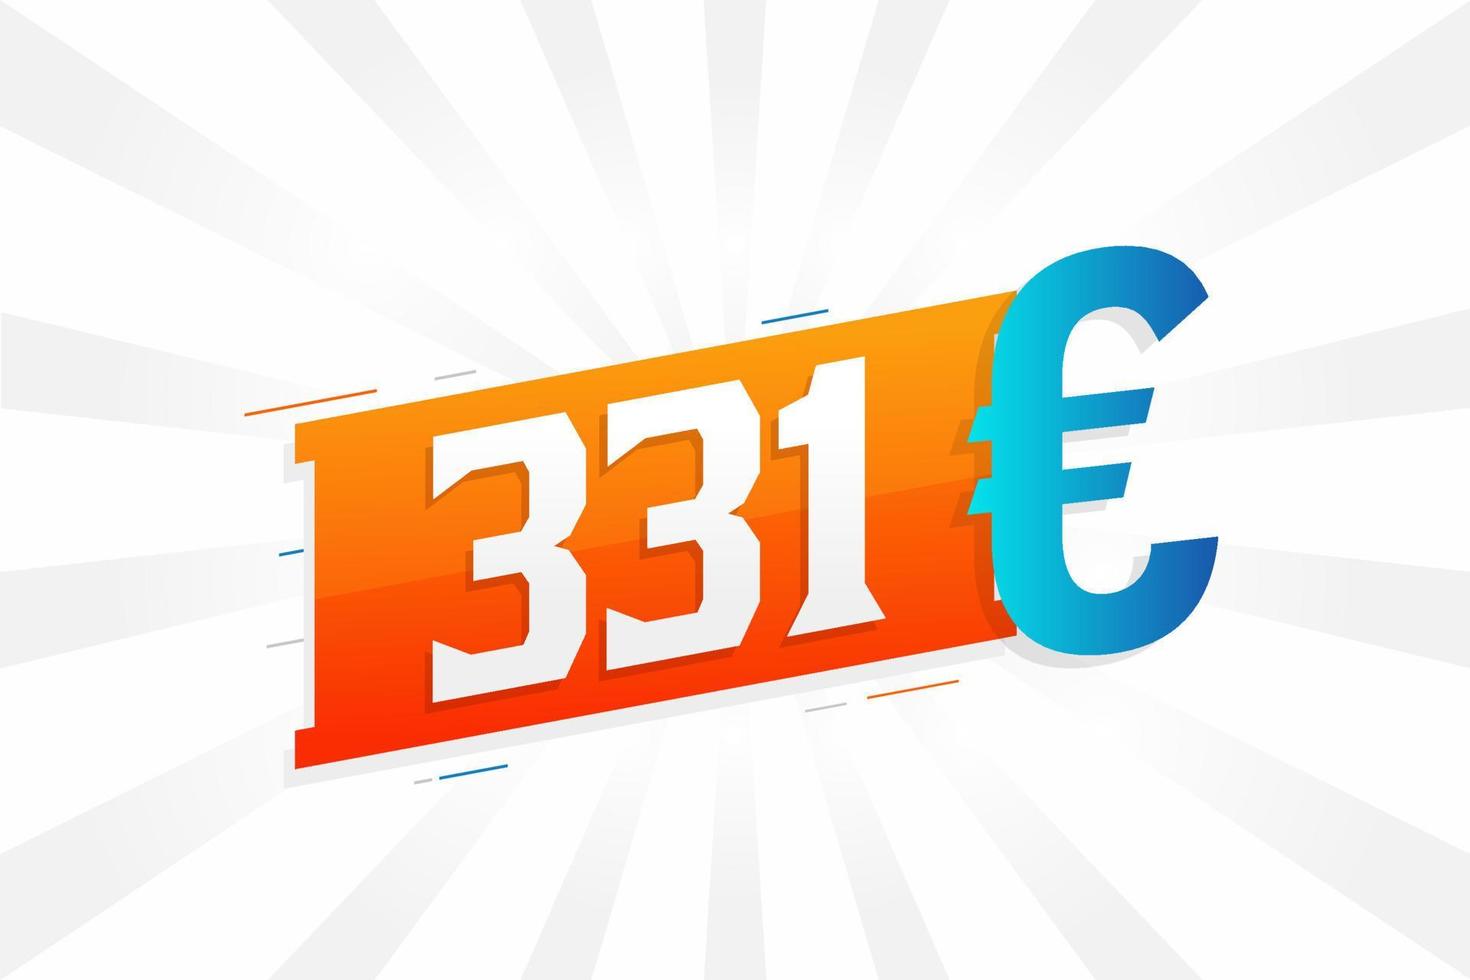 331 Euro Currency vector text symbol. 331 Euro European Union Money stock vector